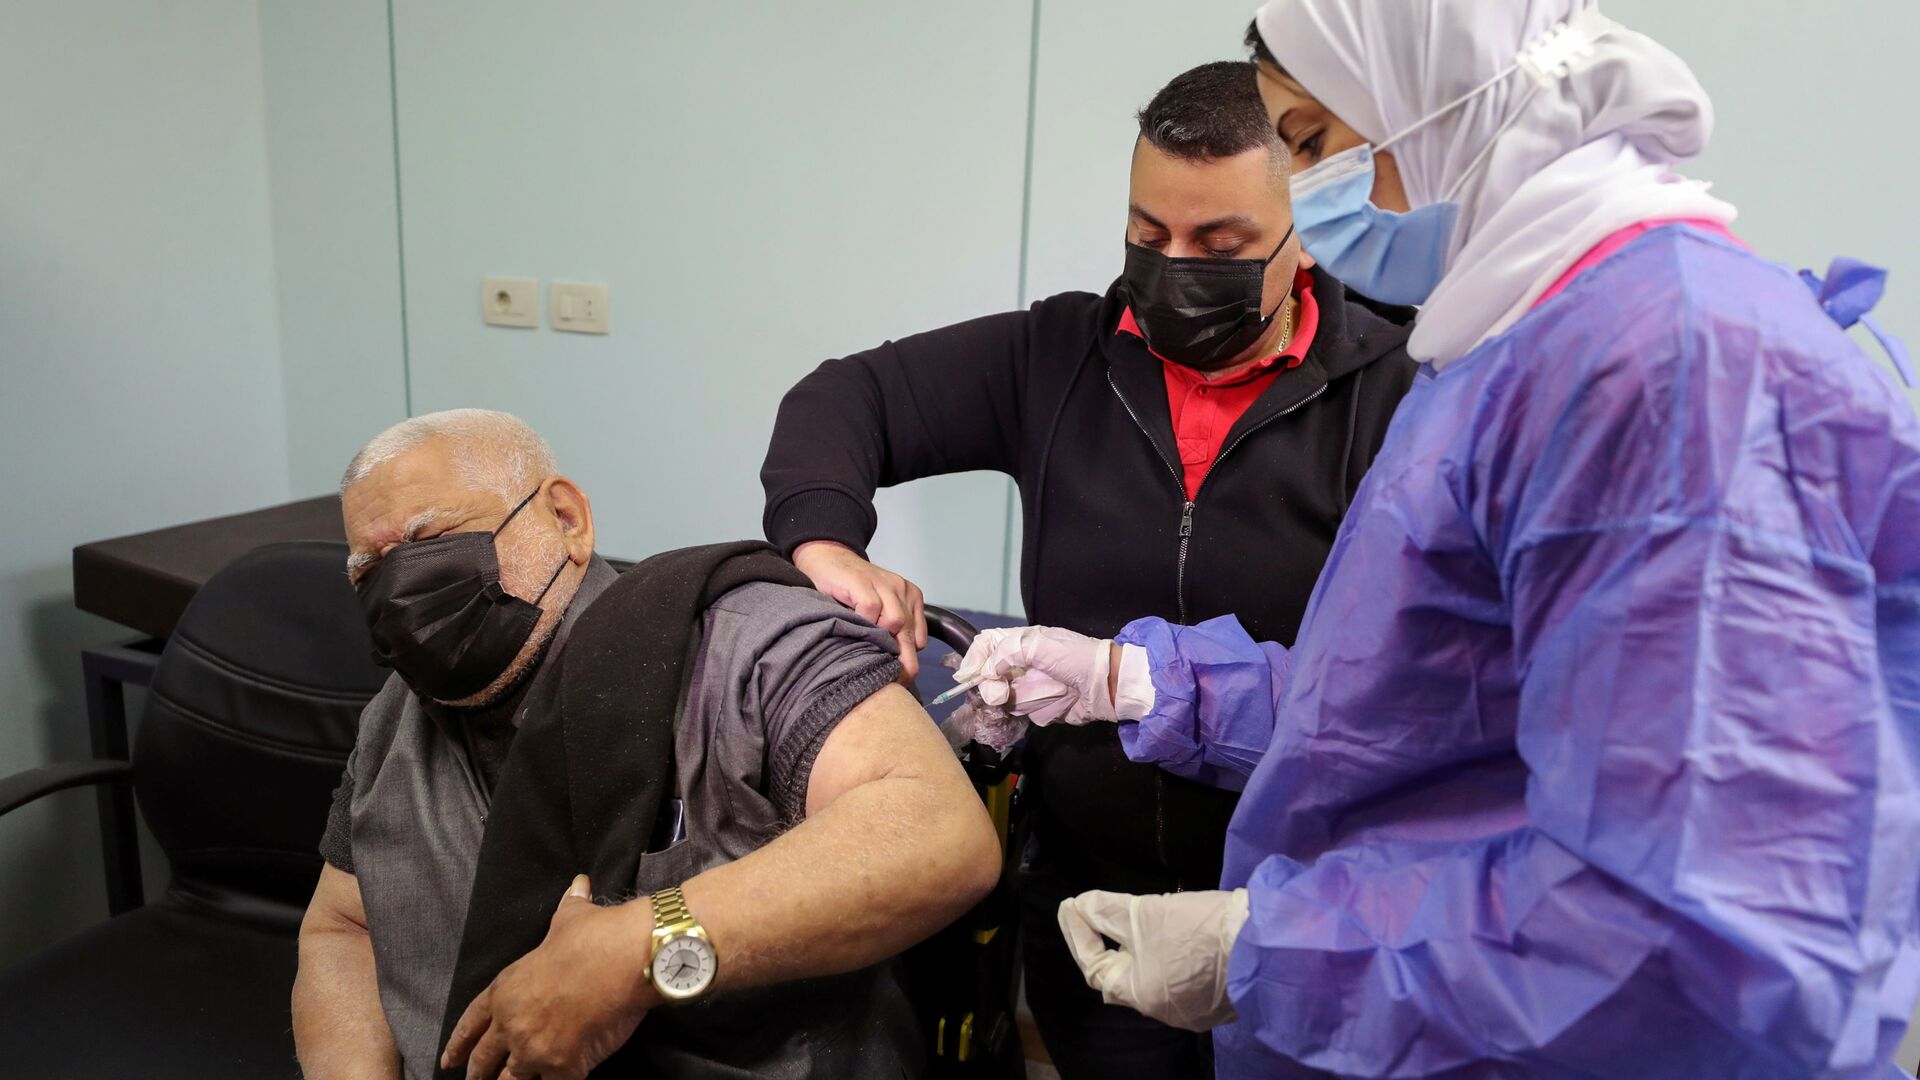  بدء تطعيم واسع النطاق في مصر ضد فيروس كورونا (كوفيد-19)، القاهرة، 4 مارس 2021 - سبوتنيك عربي, 1920, 23.07.2021